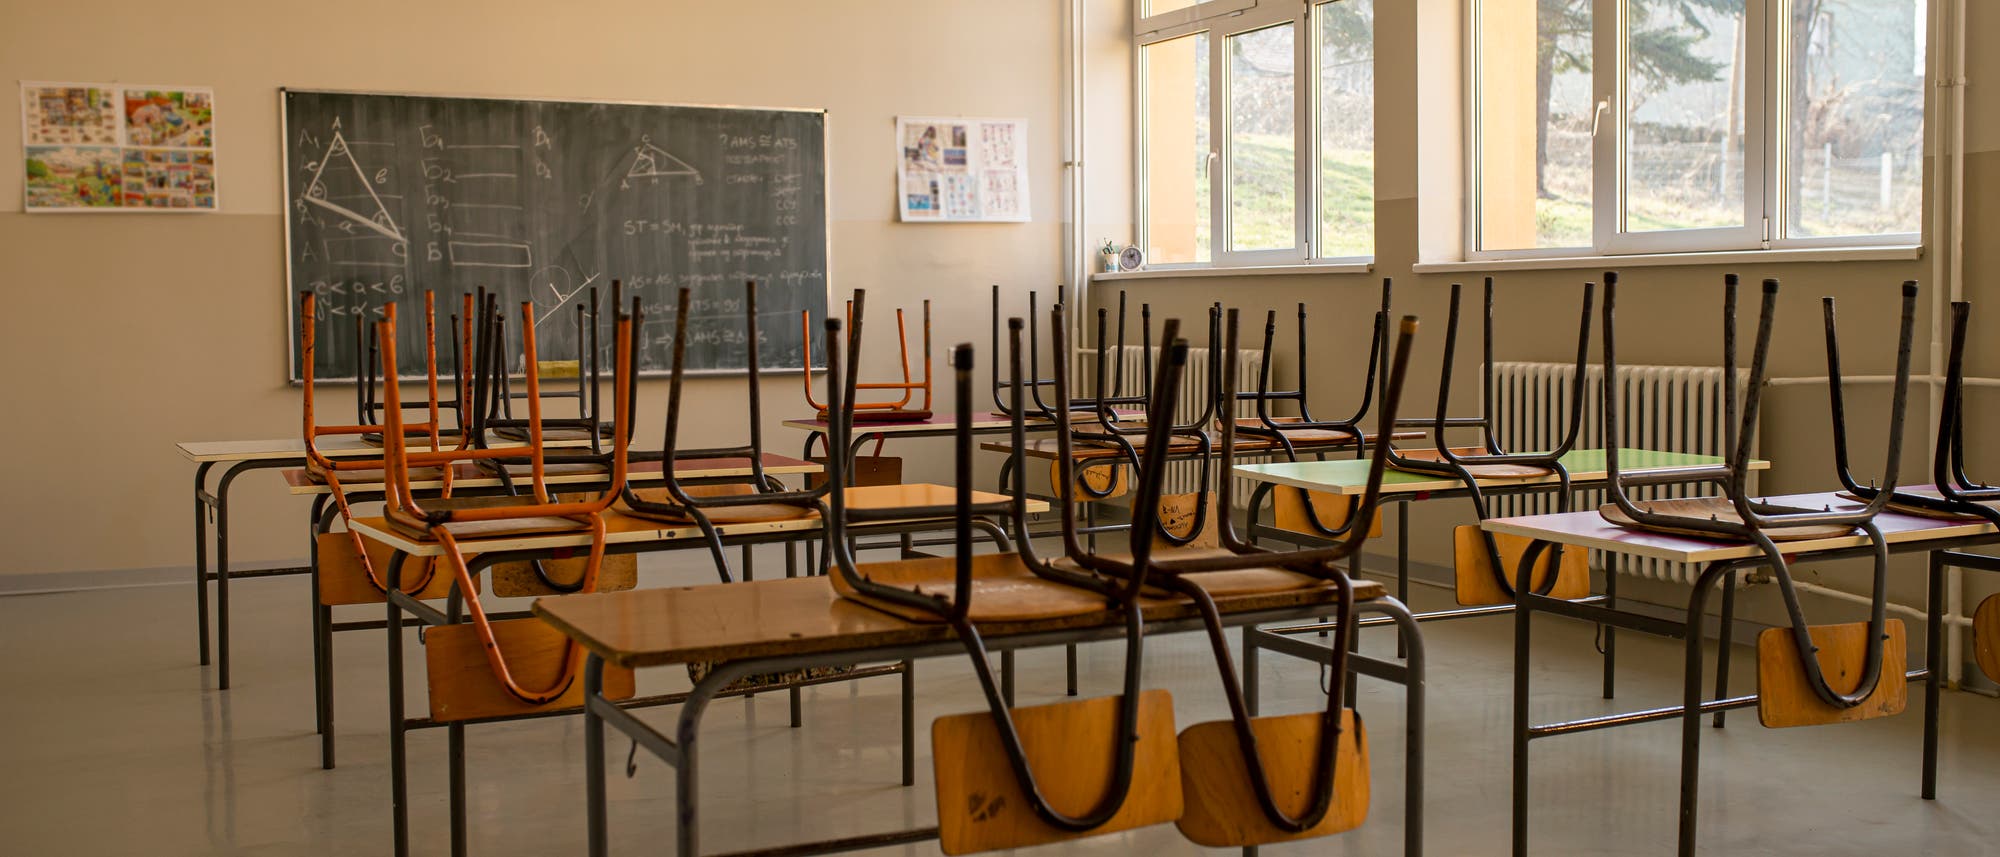 Blick in ein Klassenzimmer mit Kreidetafel und hochgestellten Stühlen